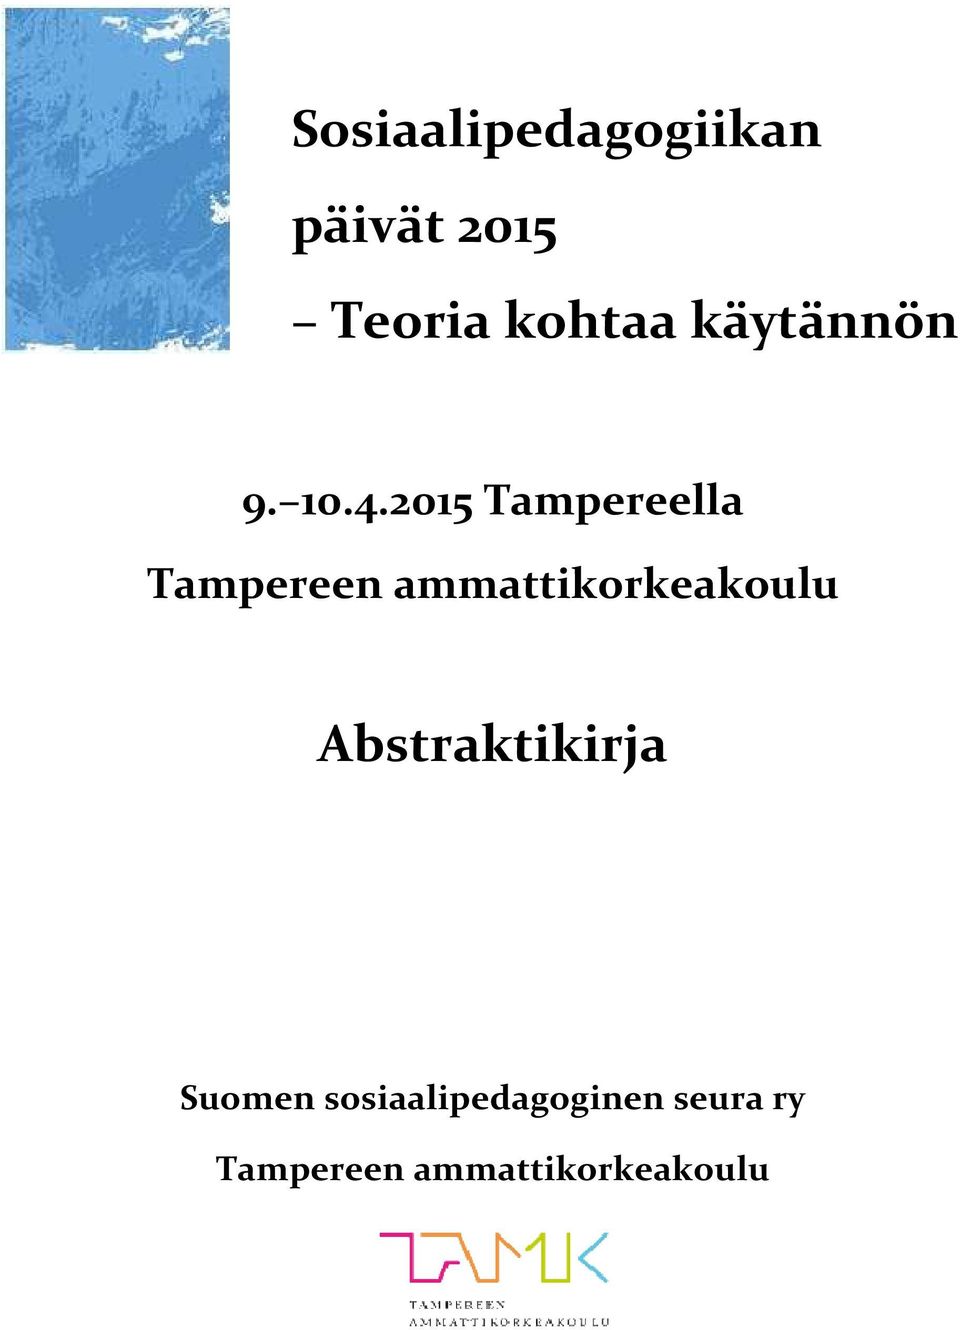 2015 Tampereella Tampereen ammattikorkeakoulu